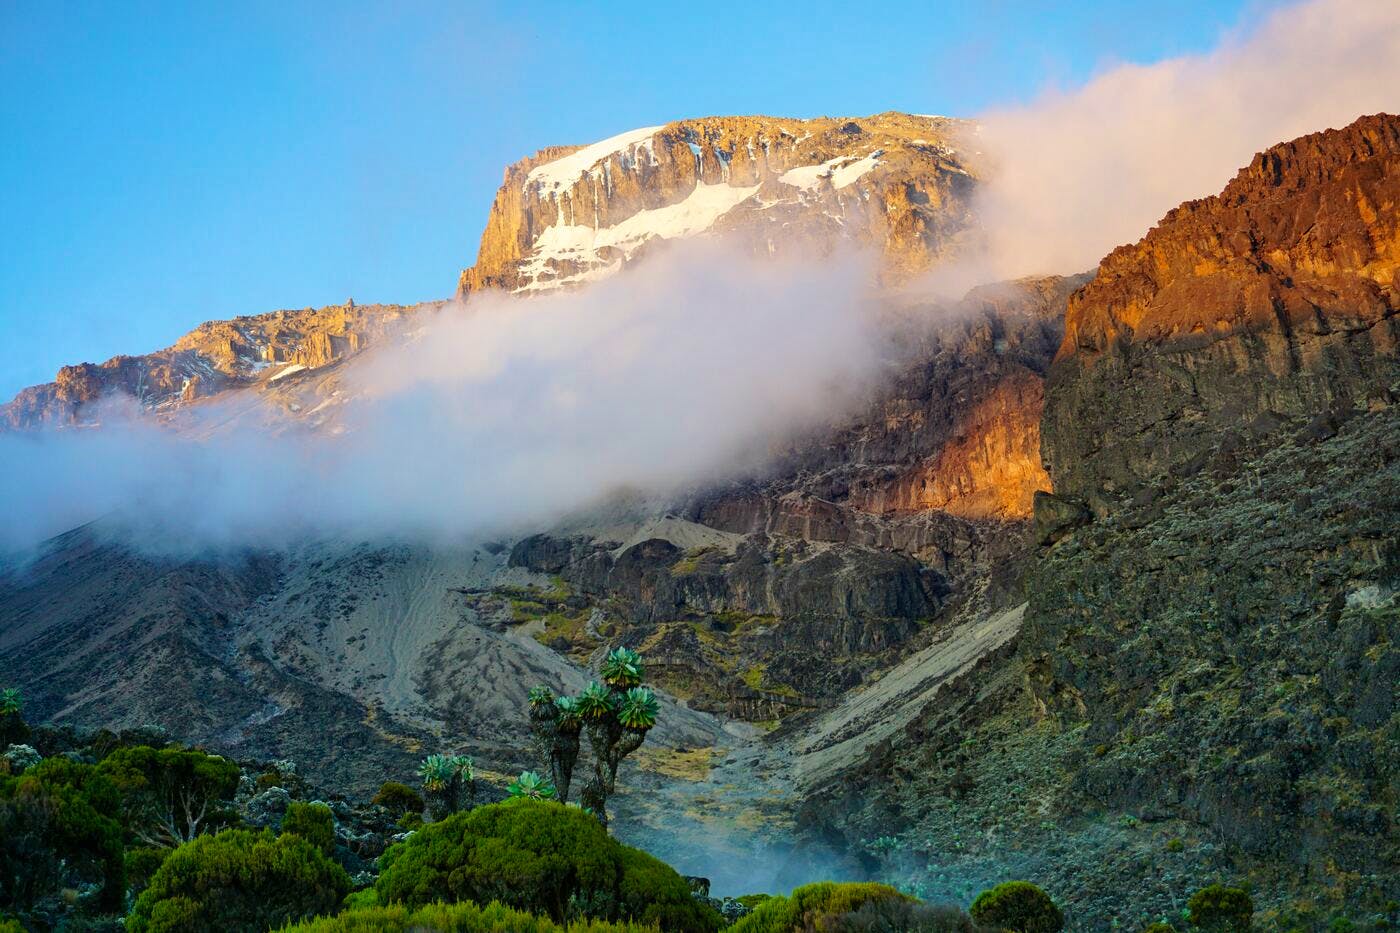 mount kilimanjaro (machame route)